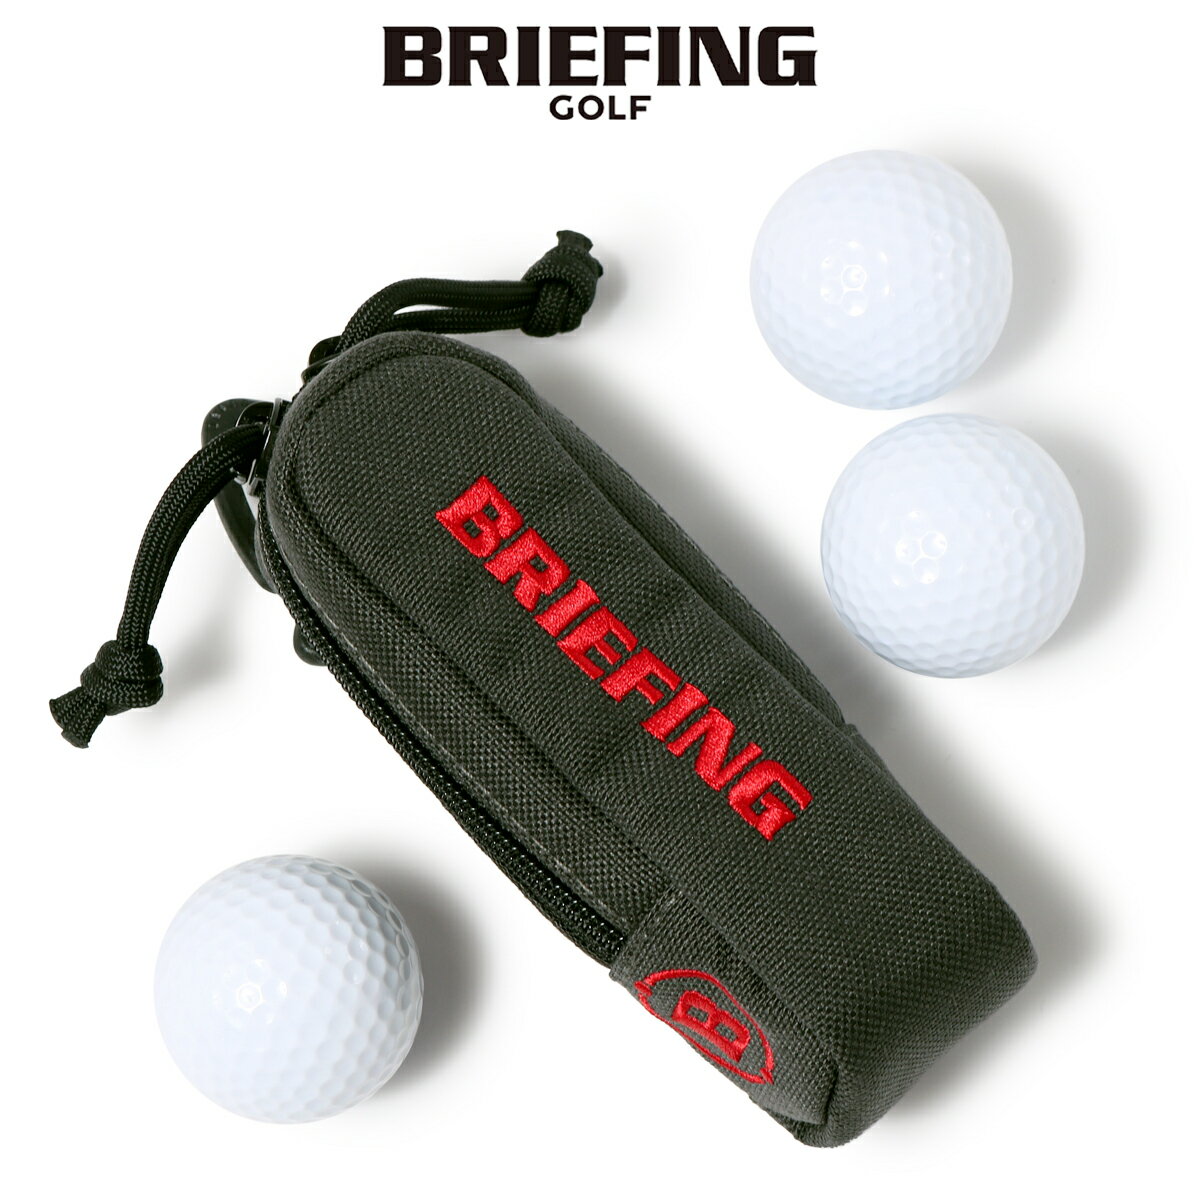 ブリーフィング ゴルフ ボールポーチ VORTEX(R) CANVAS SERIES メンズBRG223G60 BRIEFING GOLF│ボールケース 3個収納[即日発送]